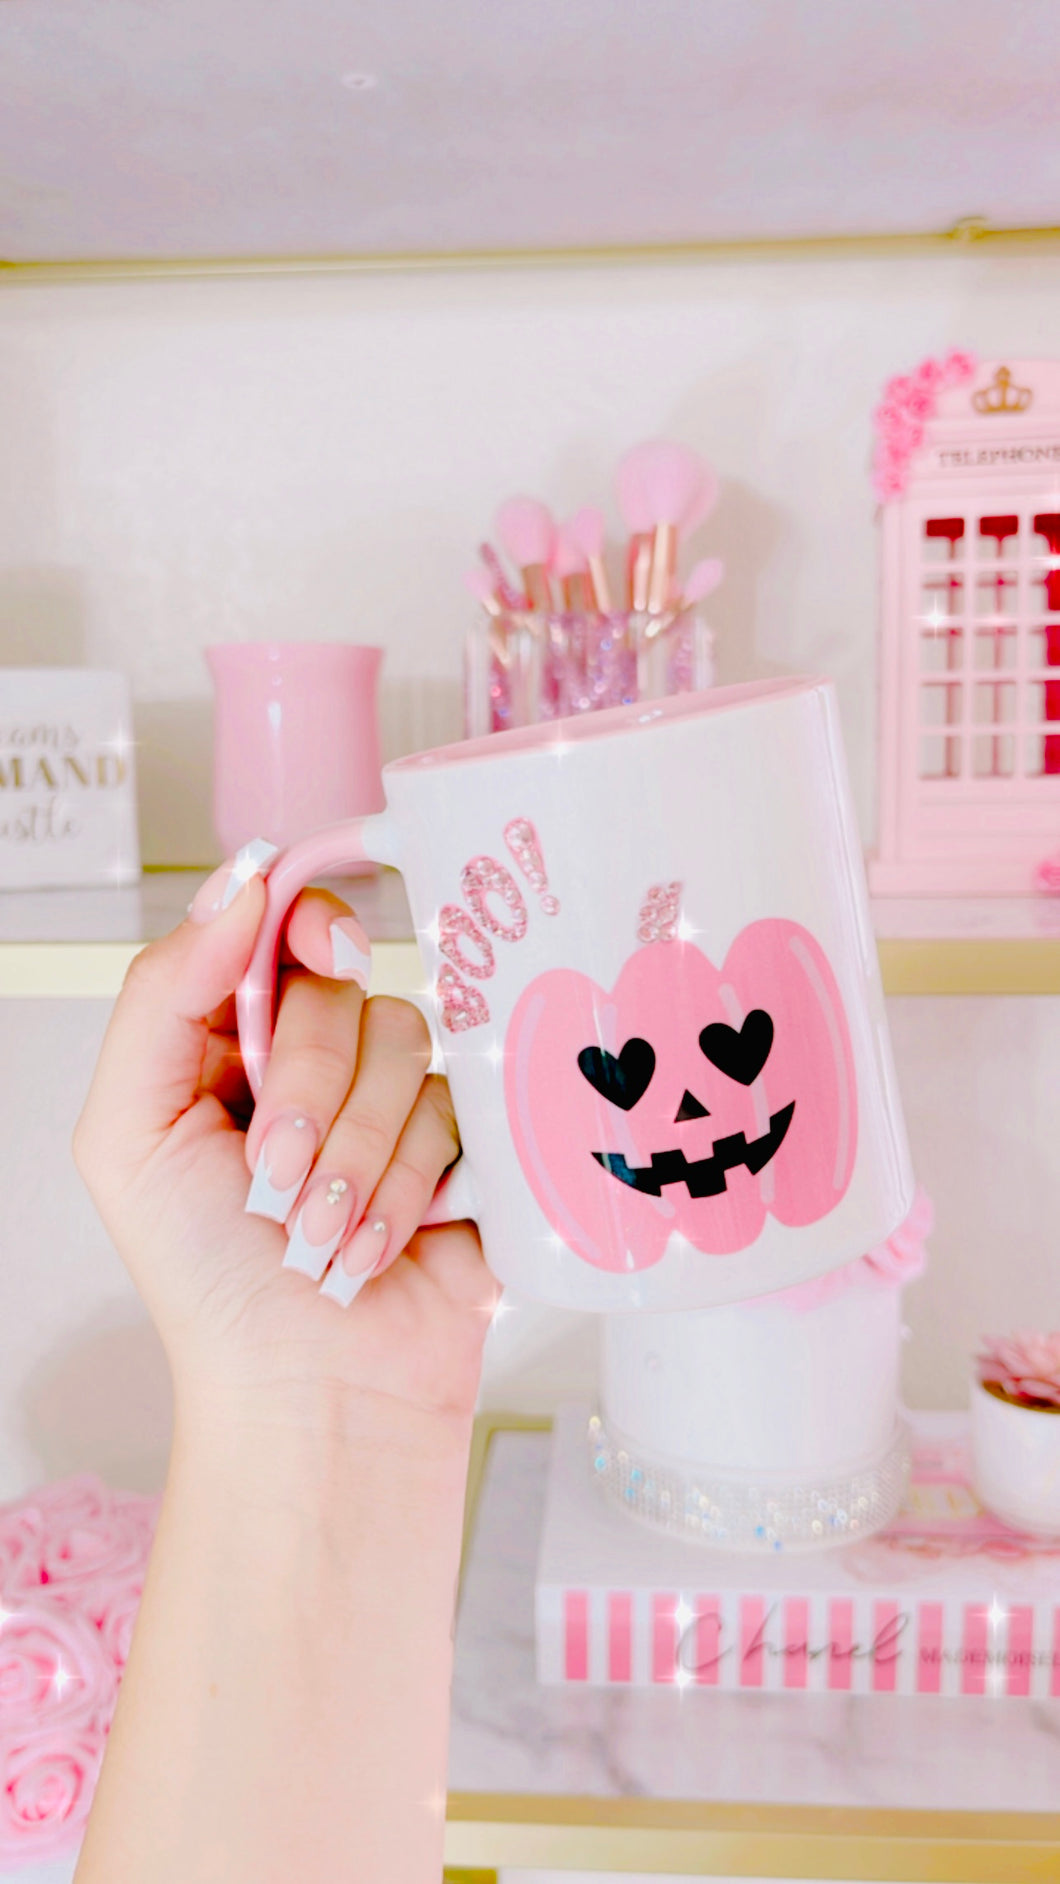 Boo! Pink pumpkin mug